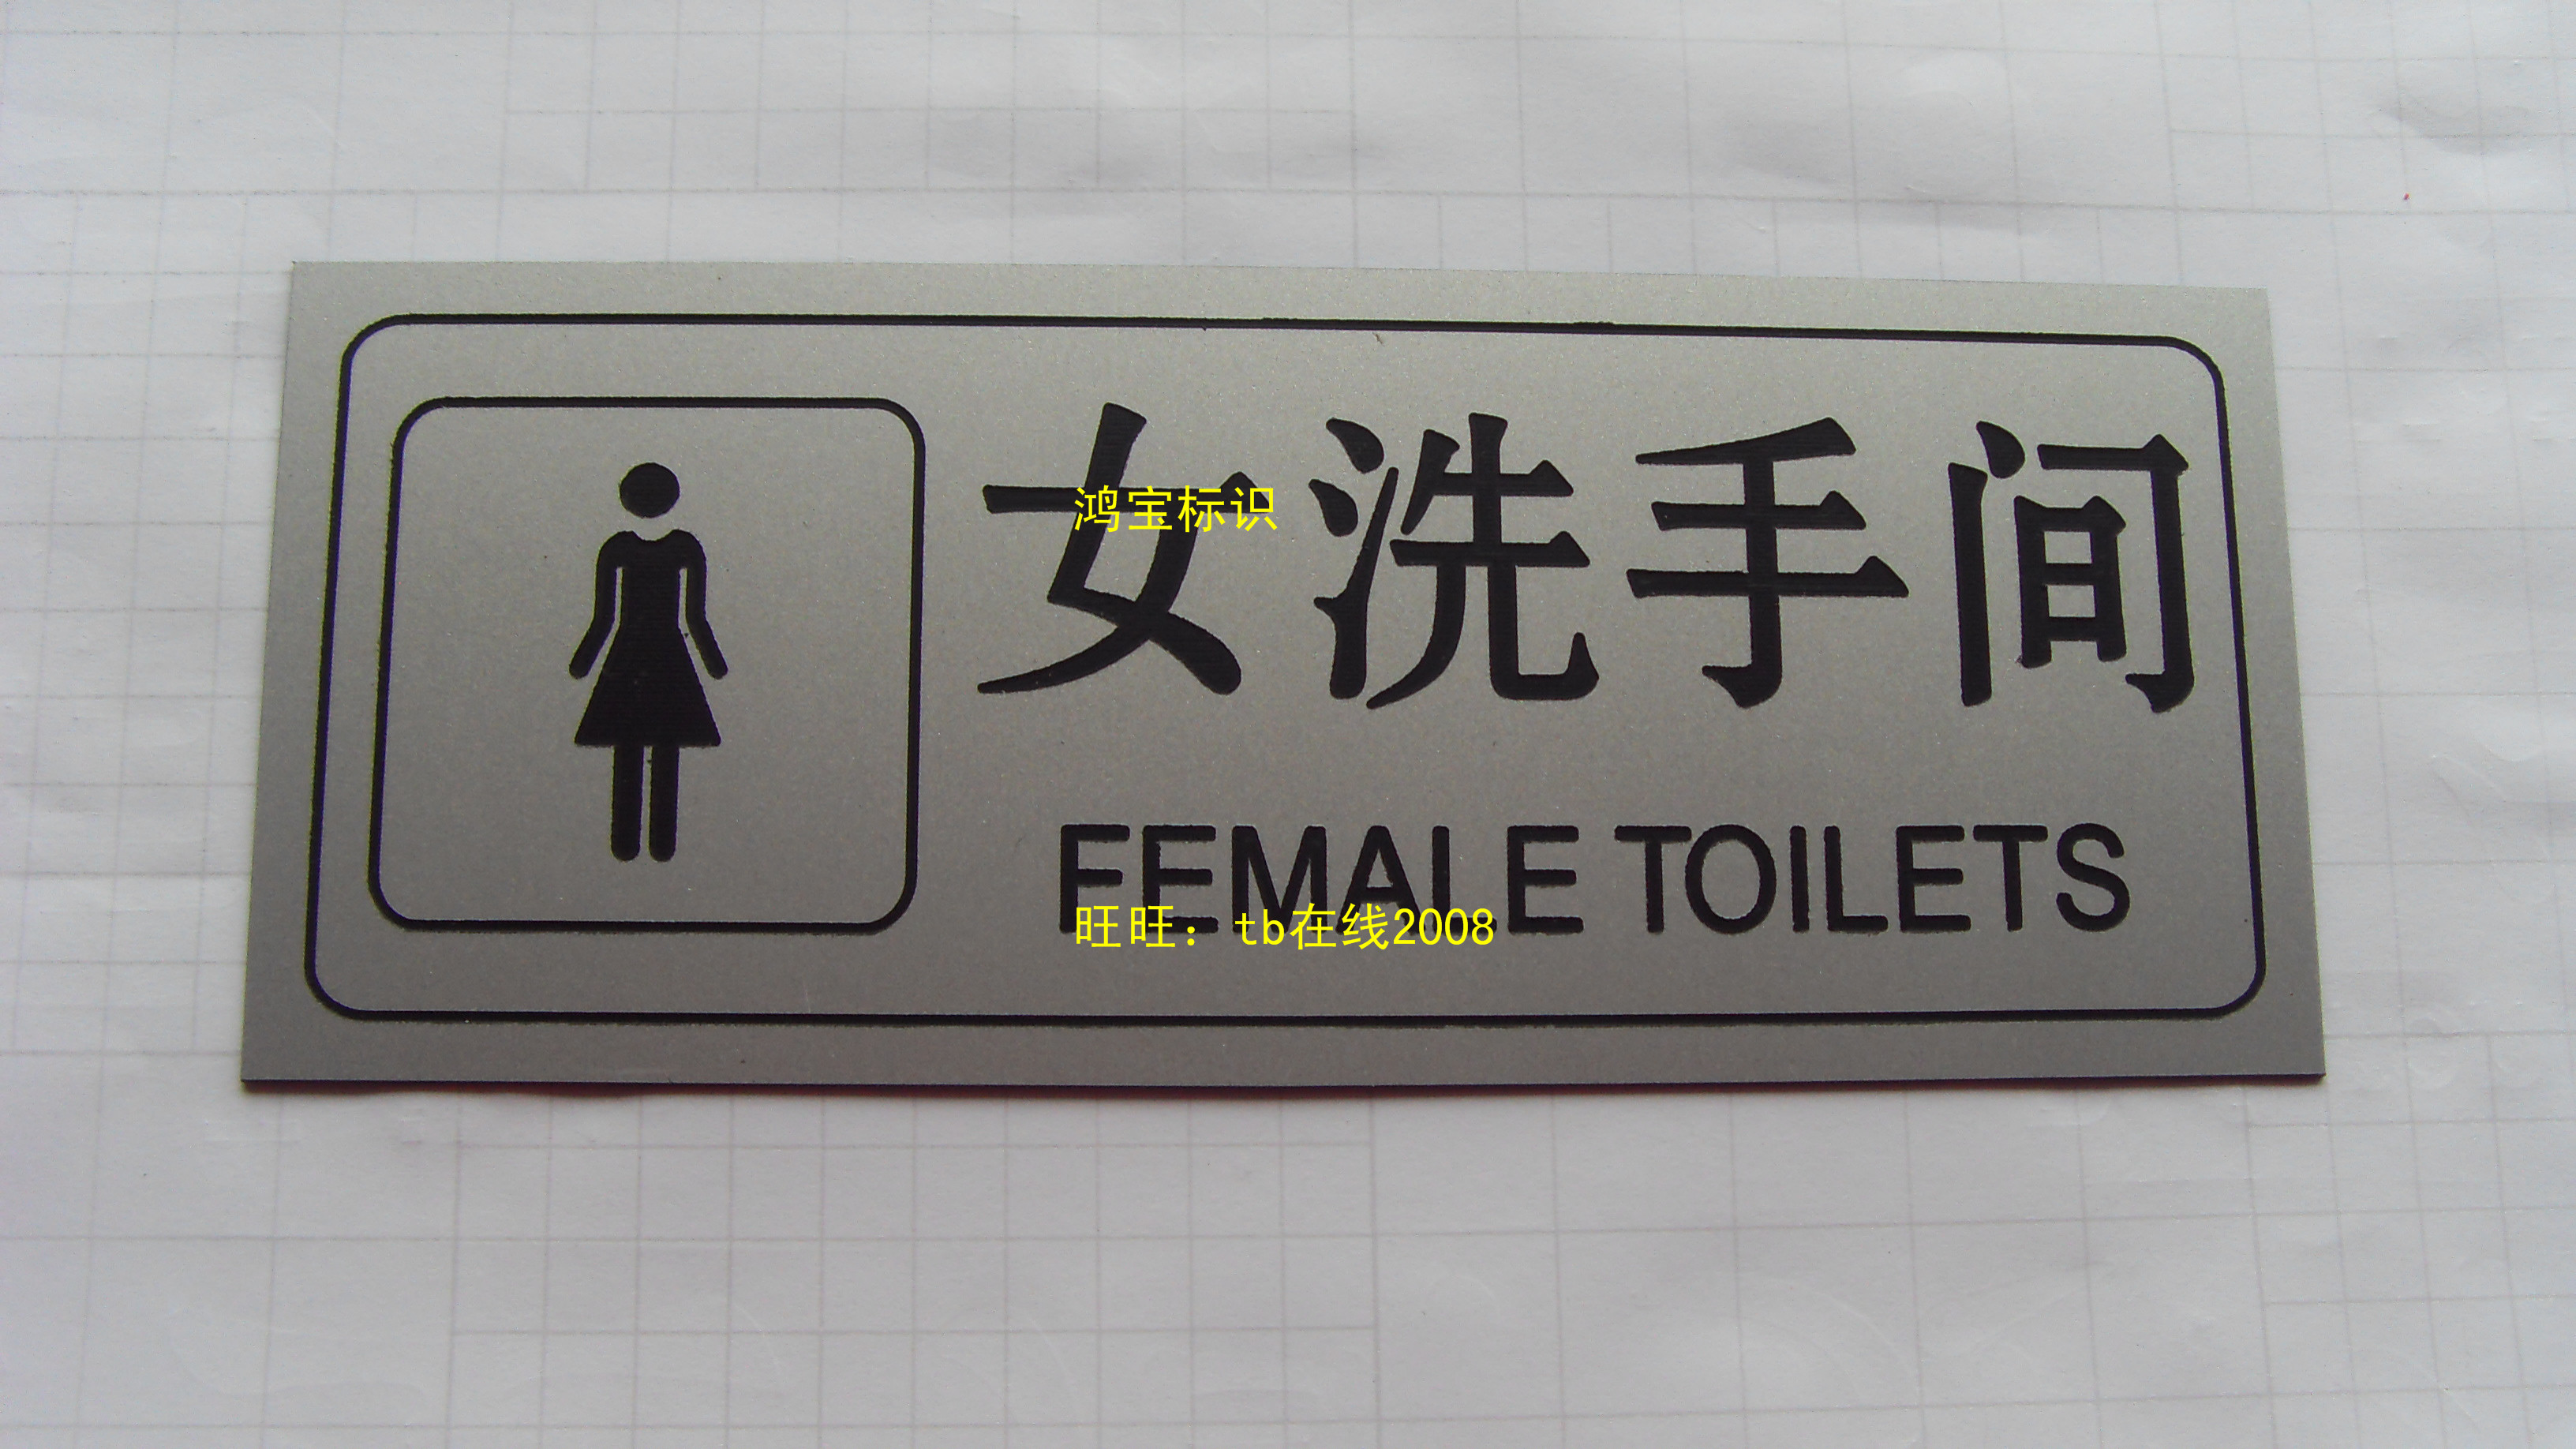 洗手间厕所标牌吸烟区告示牌双色板雕刻牌请节约用水提醒标签定制